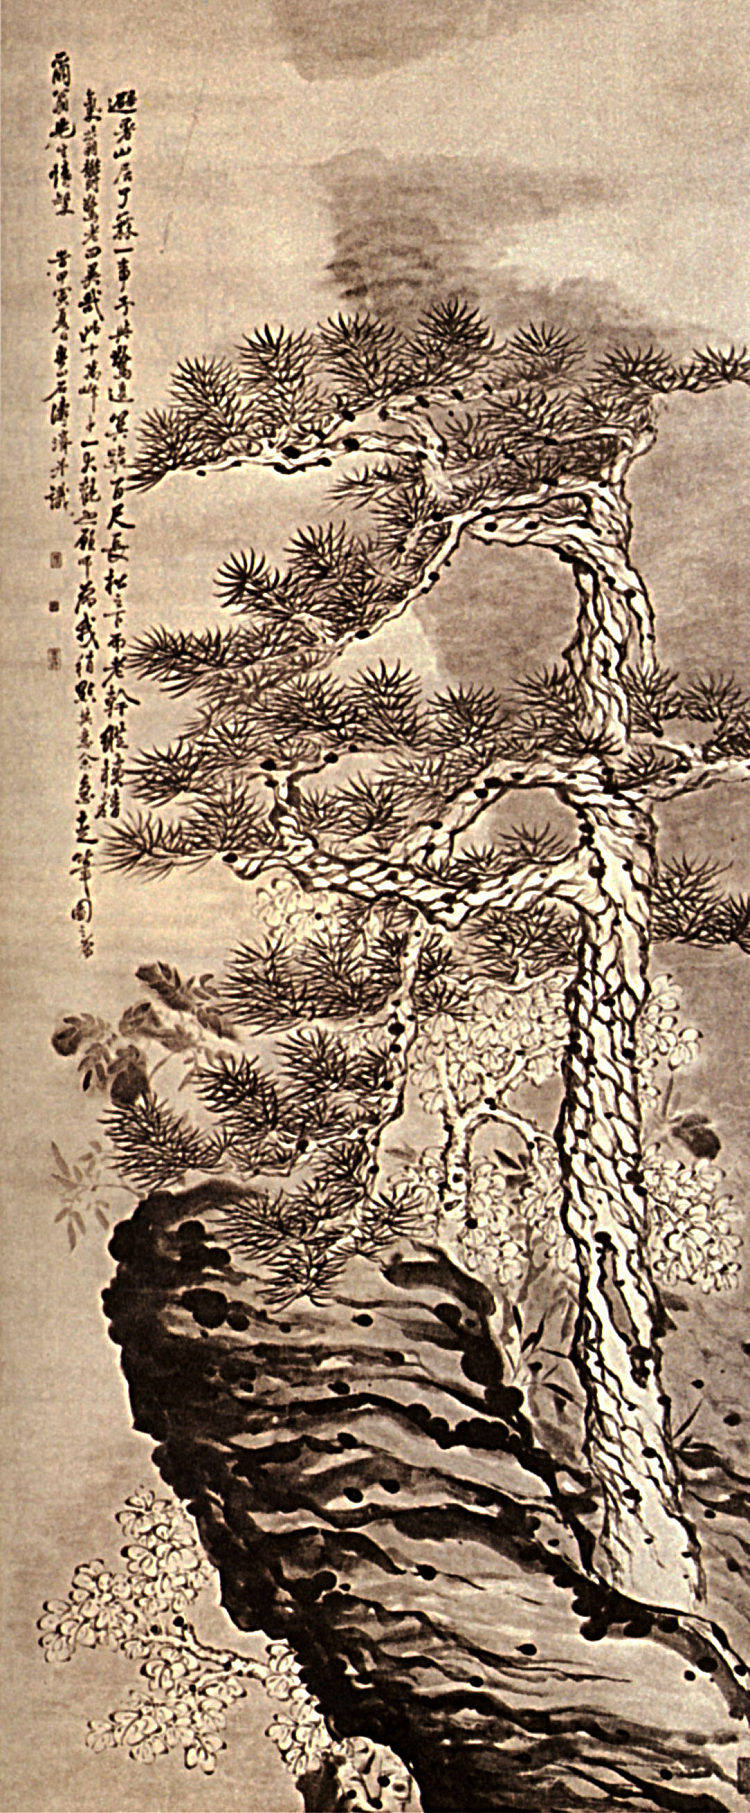 钉在悬崖上 Pin on the Cliff (1656 - 1707)，石涛